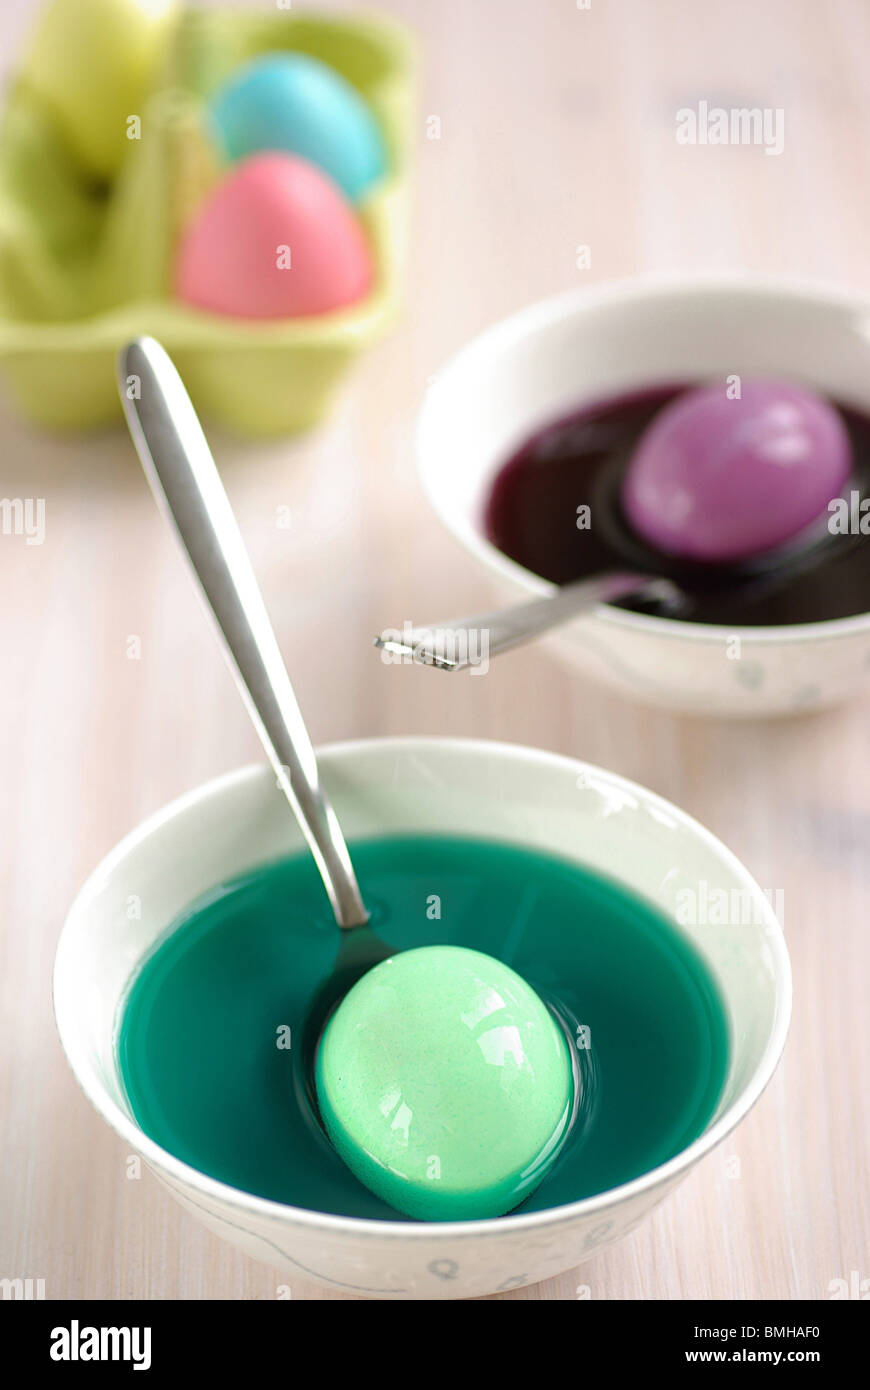 Huevos de Pascua está teñido en varios tazones de tintes de colores brillantes Foto de stock